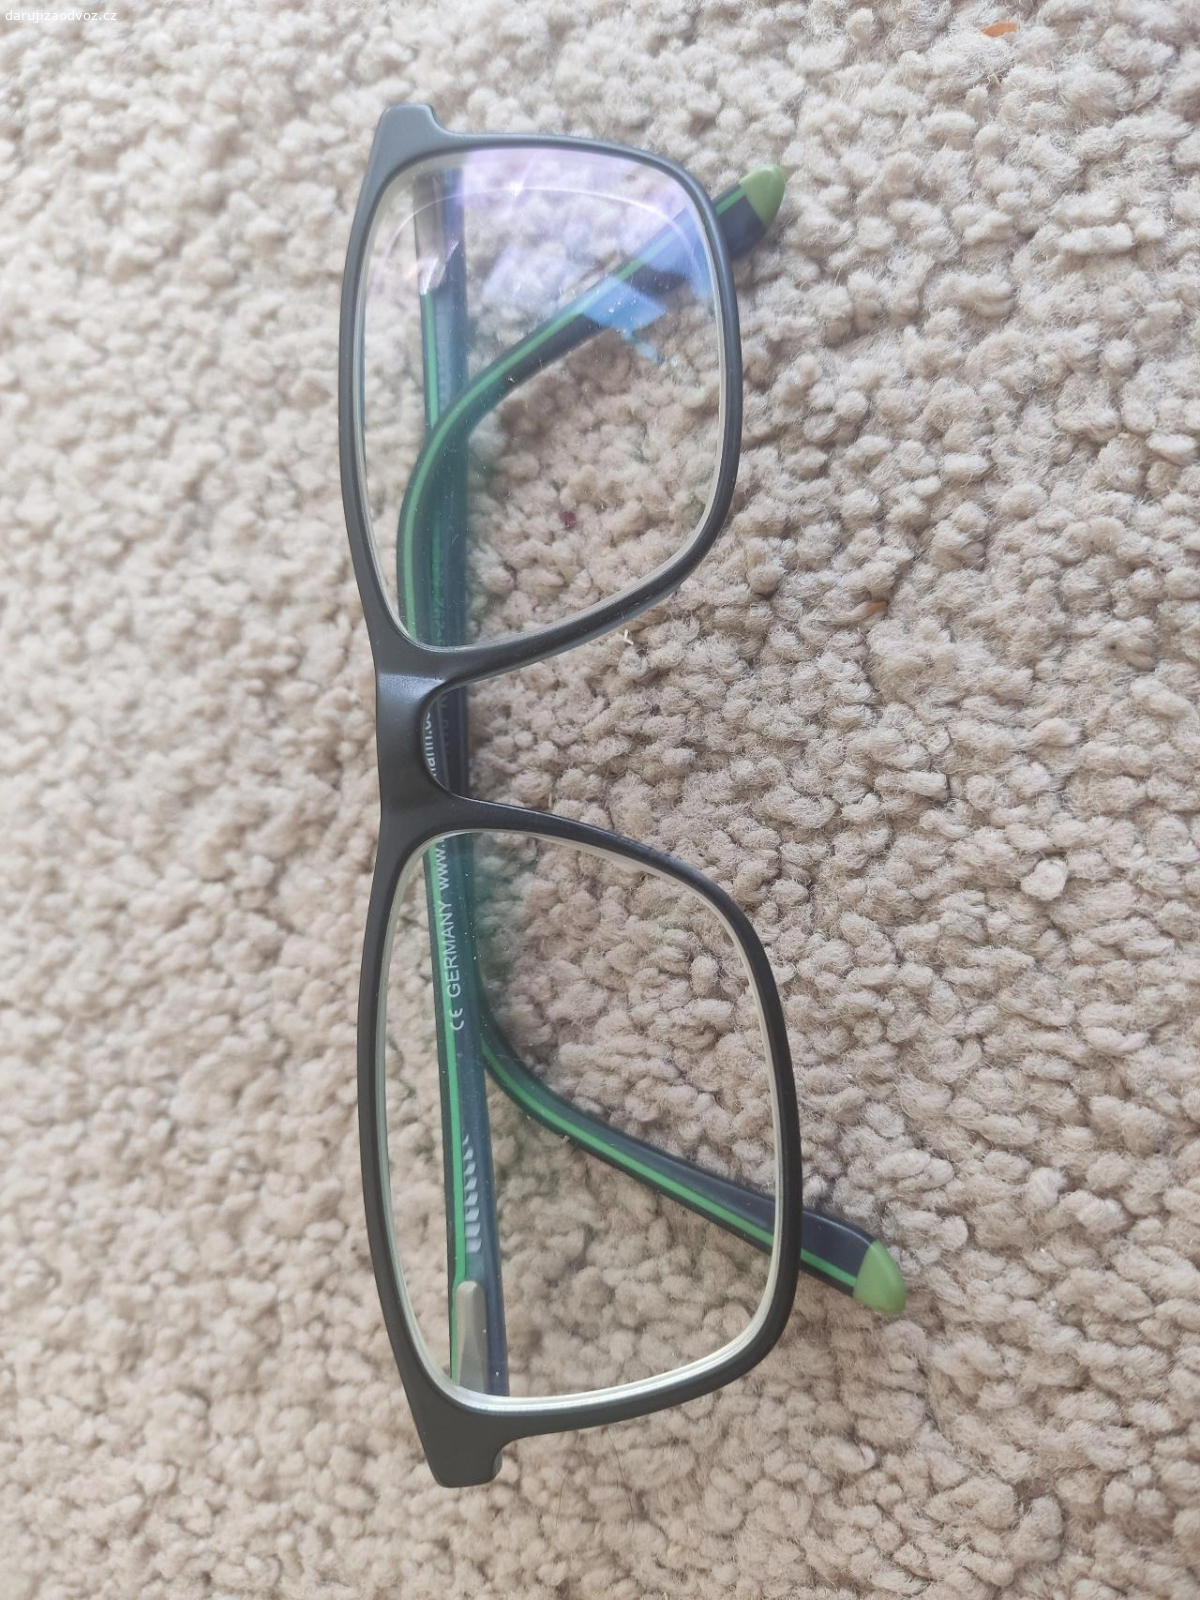 Daruji použité brýle. červené jsou dámské, zelené a černé jsou juniorské.Neposilam.